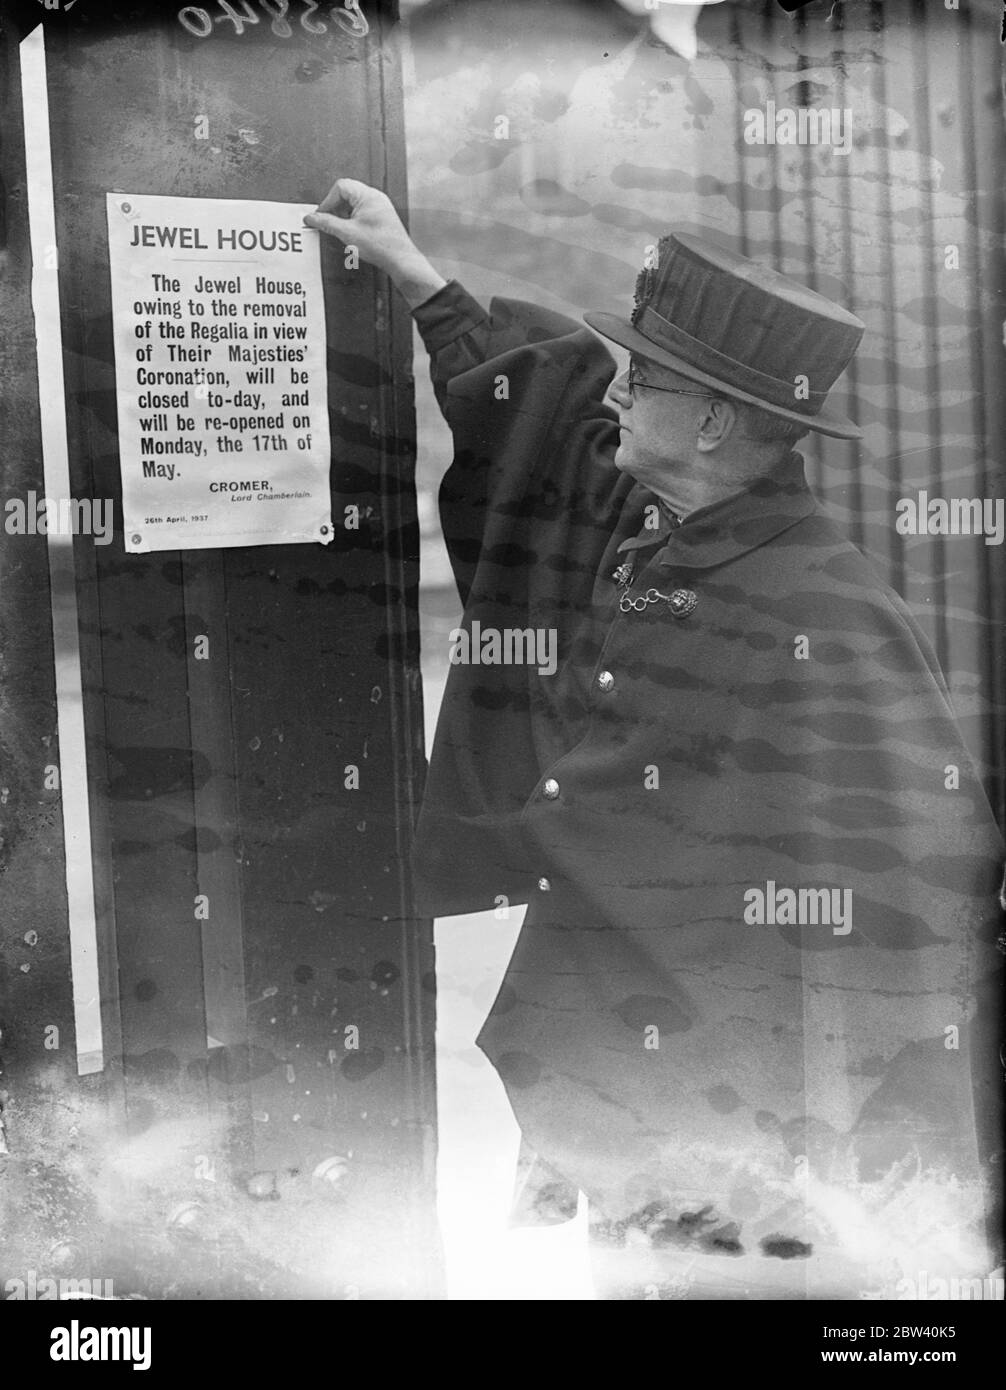 La Wakefield Tower è chiusa poiché i Gioielli della Corona sono rimossi per l'incoronazione. A causa della rimozione dei Gioielli della Corona per l'incoronazione, la Wakefield Tower presso la Torre di Londra sarà chiusa al pubblico fino alla metà di maggio. Foto spettacoli: Un Warden Yeoman che ha dato il via alla notizia della chiusura della Jewel House alla Torre. 26 aprile 1937 Foto Stock